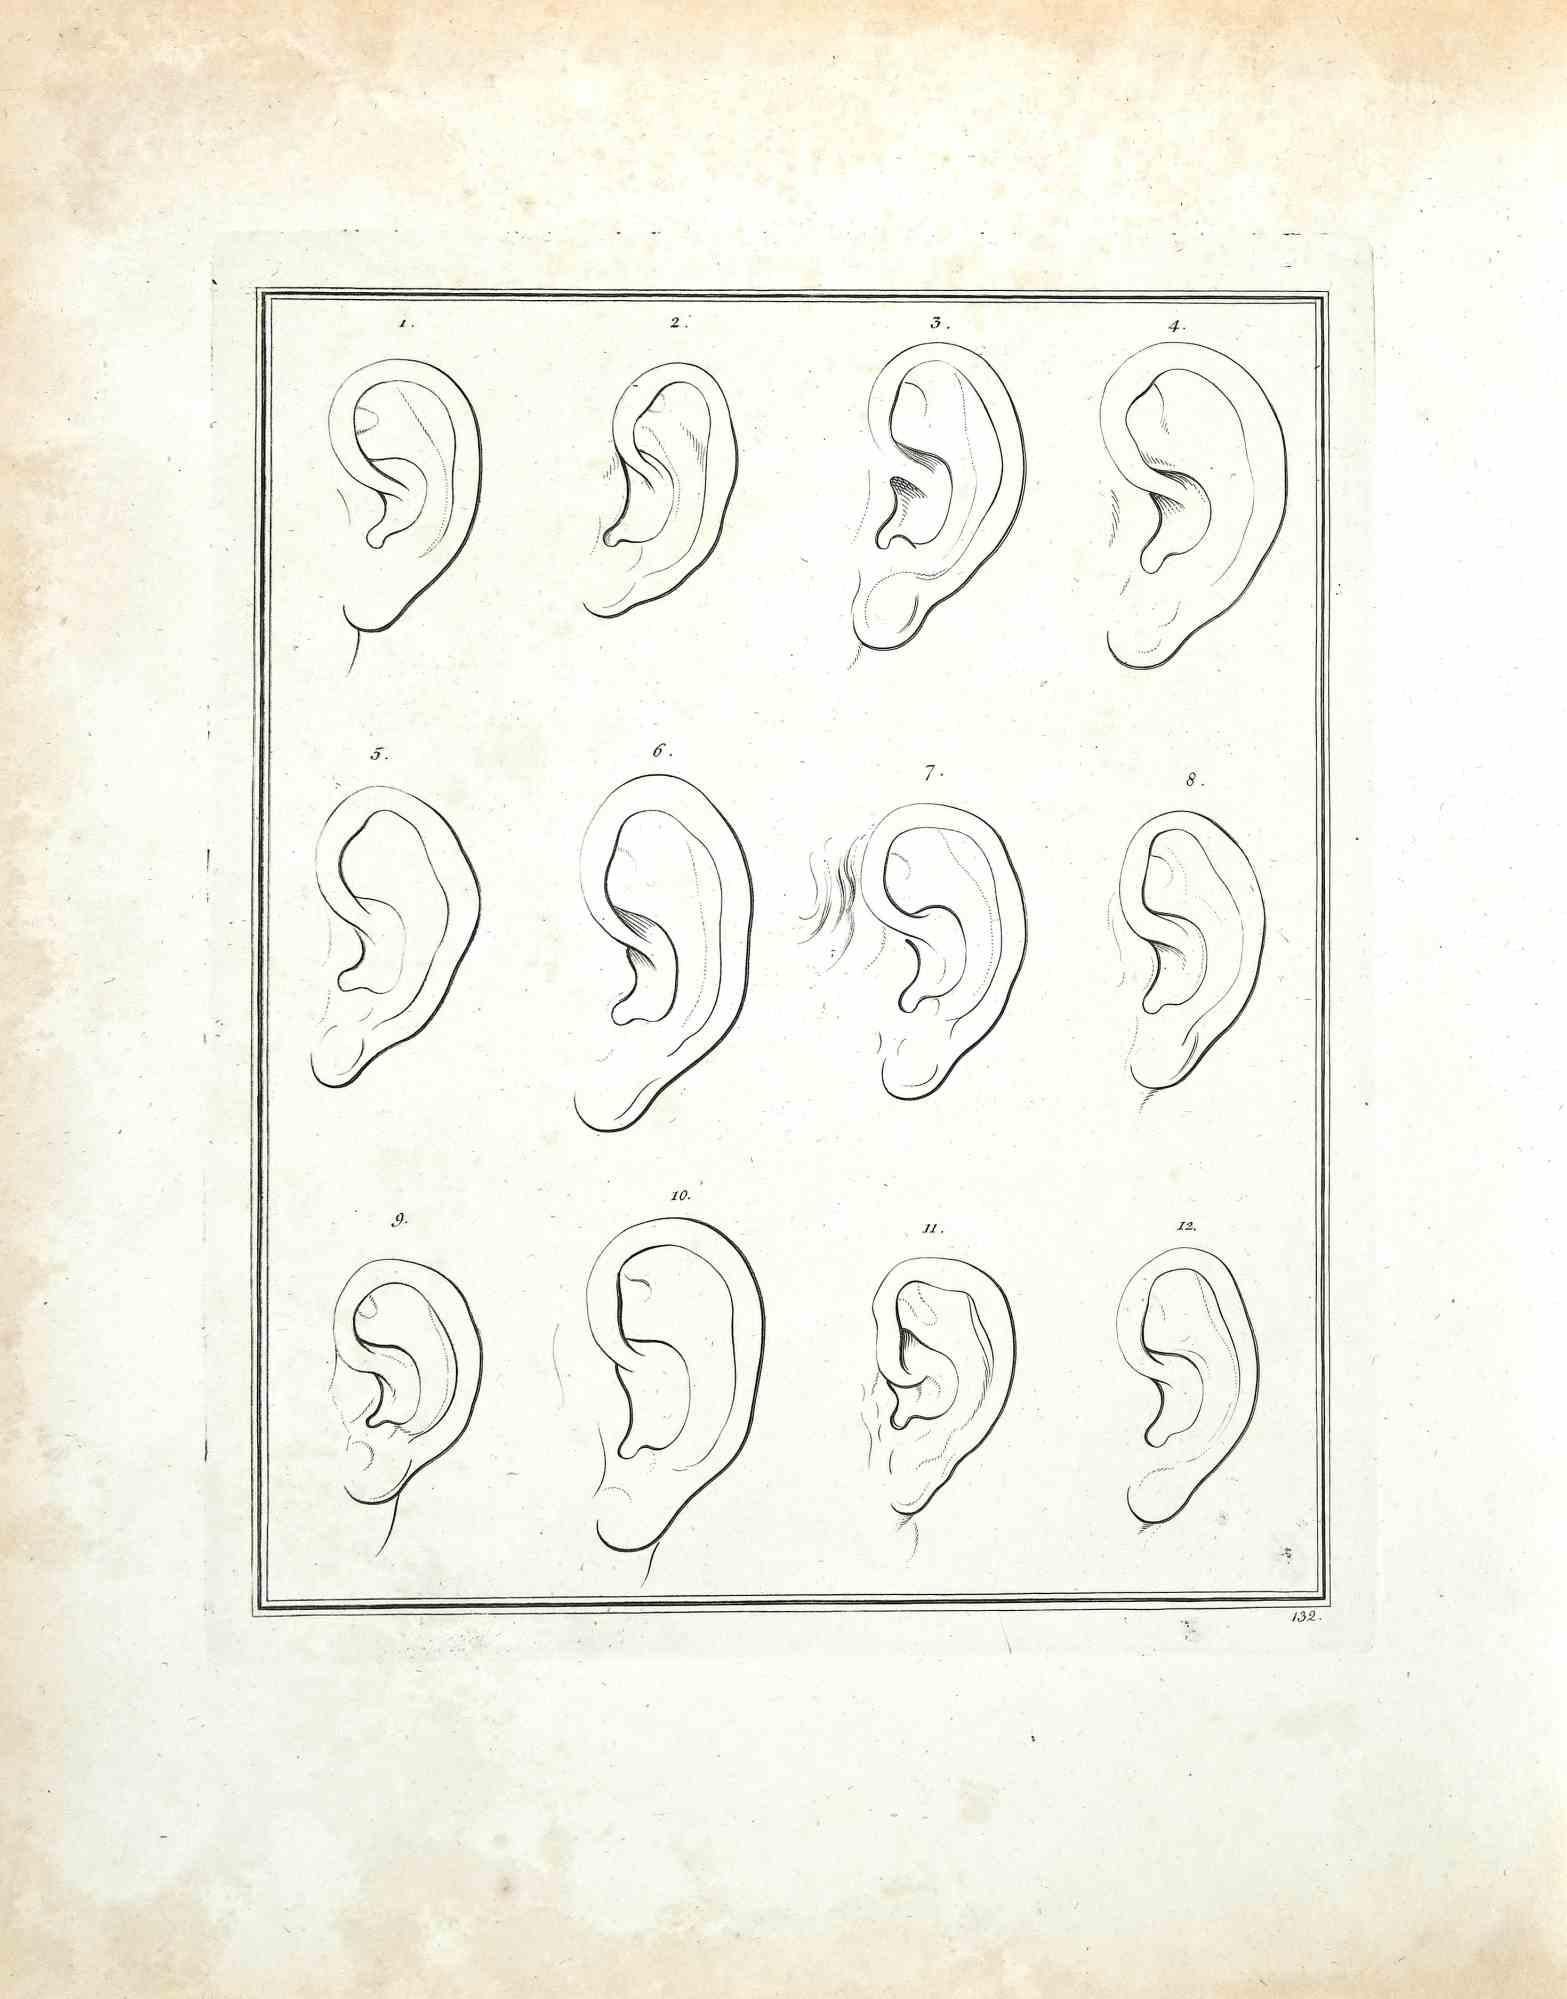 The Ears - The Physiognomy ist eine Original-Radierung von Thomas Holloway für Johann Caspar Lavaters "Essays on Physiognomy, Designed to Promote the Knowledge and the Love of Mankind", London, Bensley, 1810. 

Guter Zustand mit einigen Stockflecken